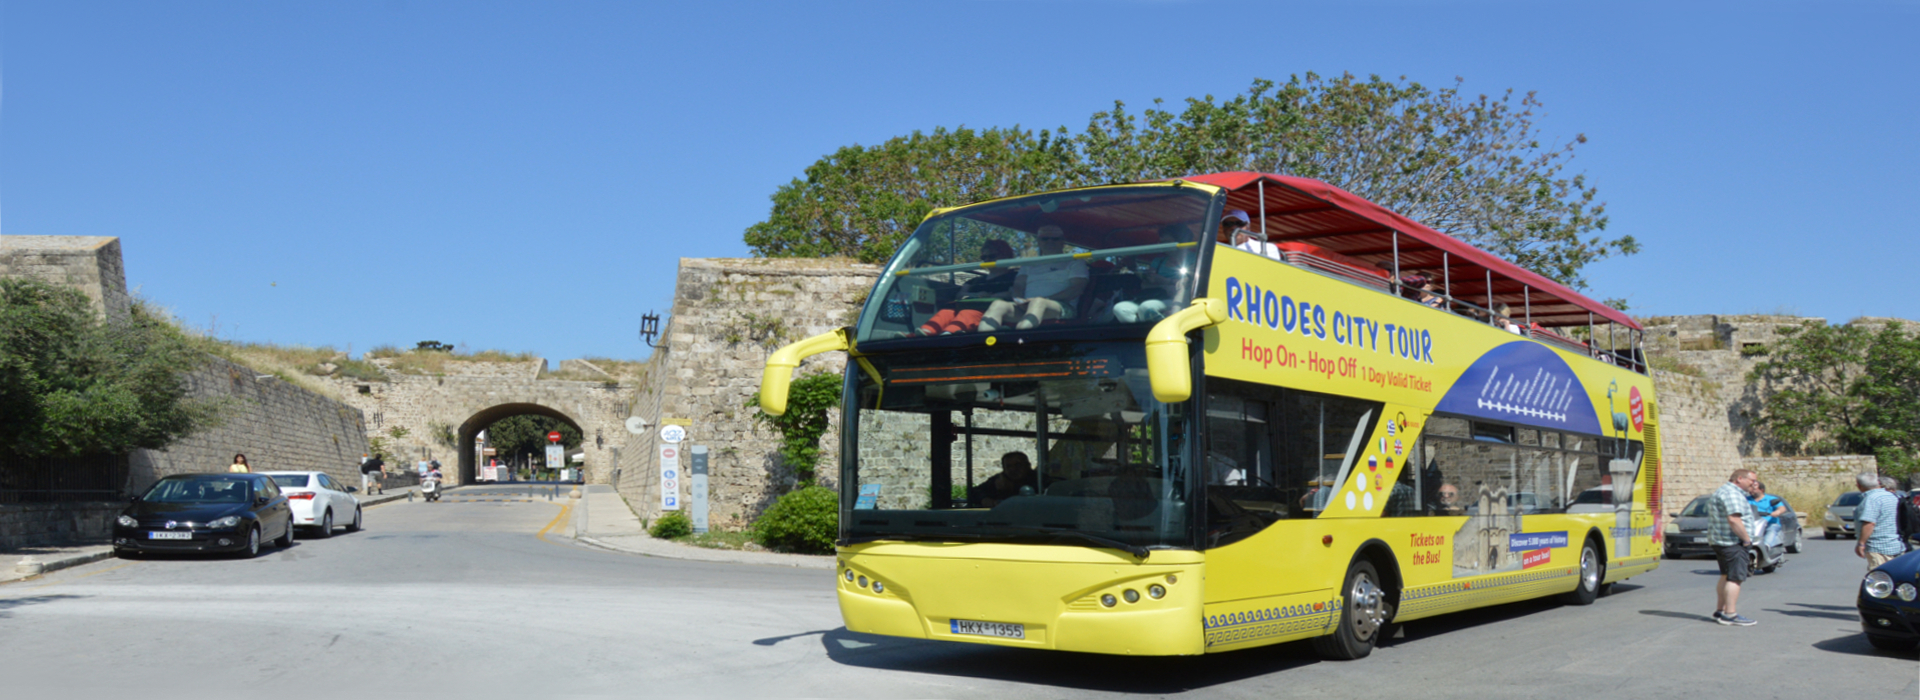 Visite de la ville de Rhodes avec bus ouvert | Captains Tours